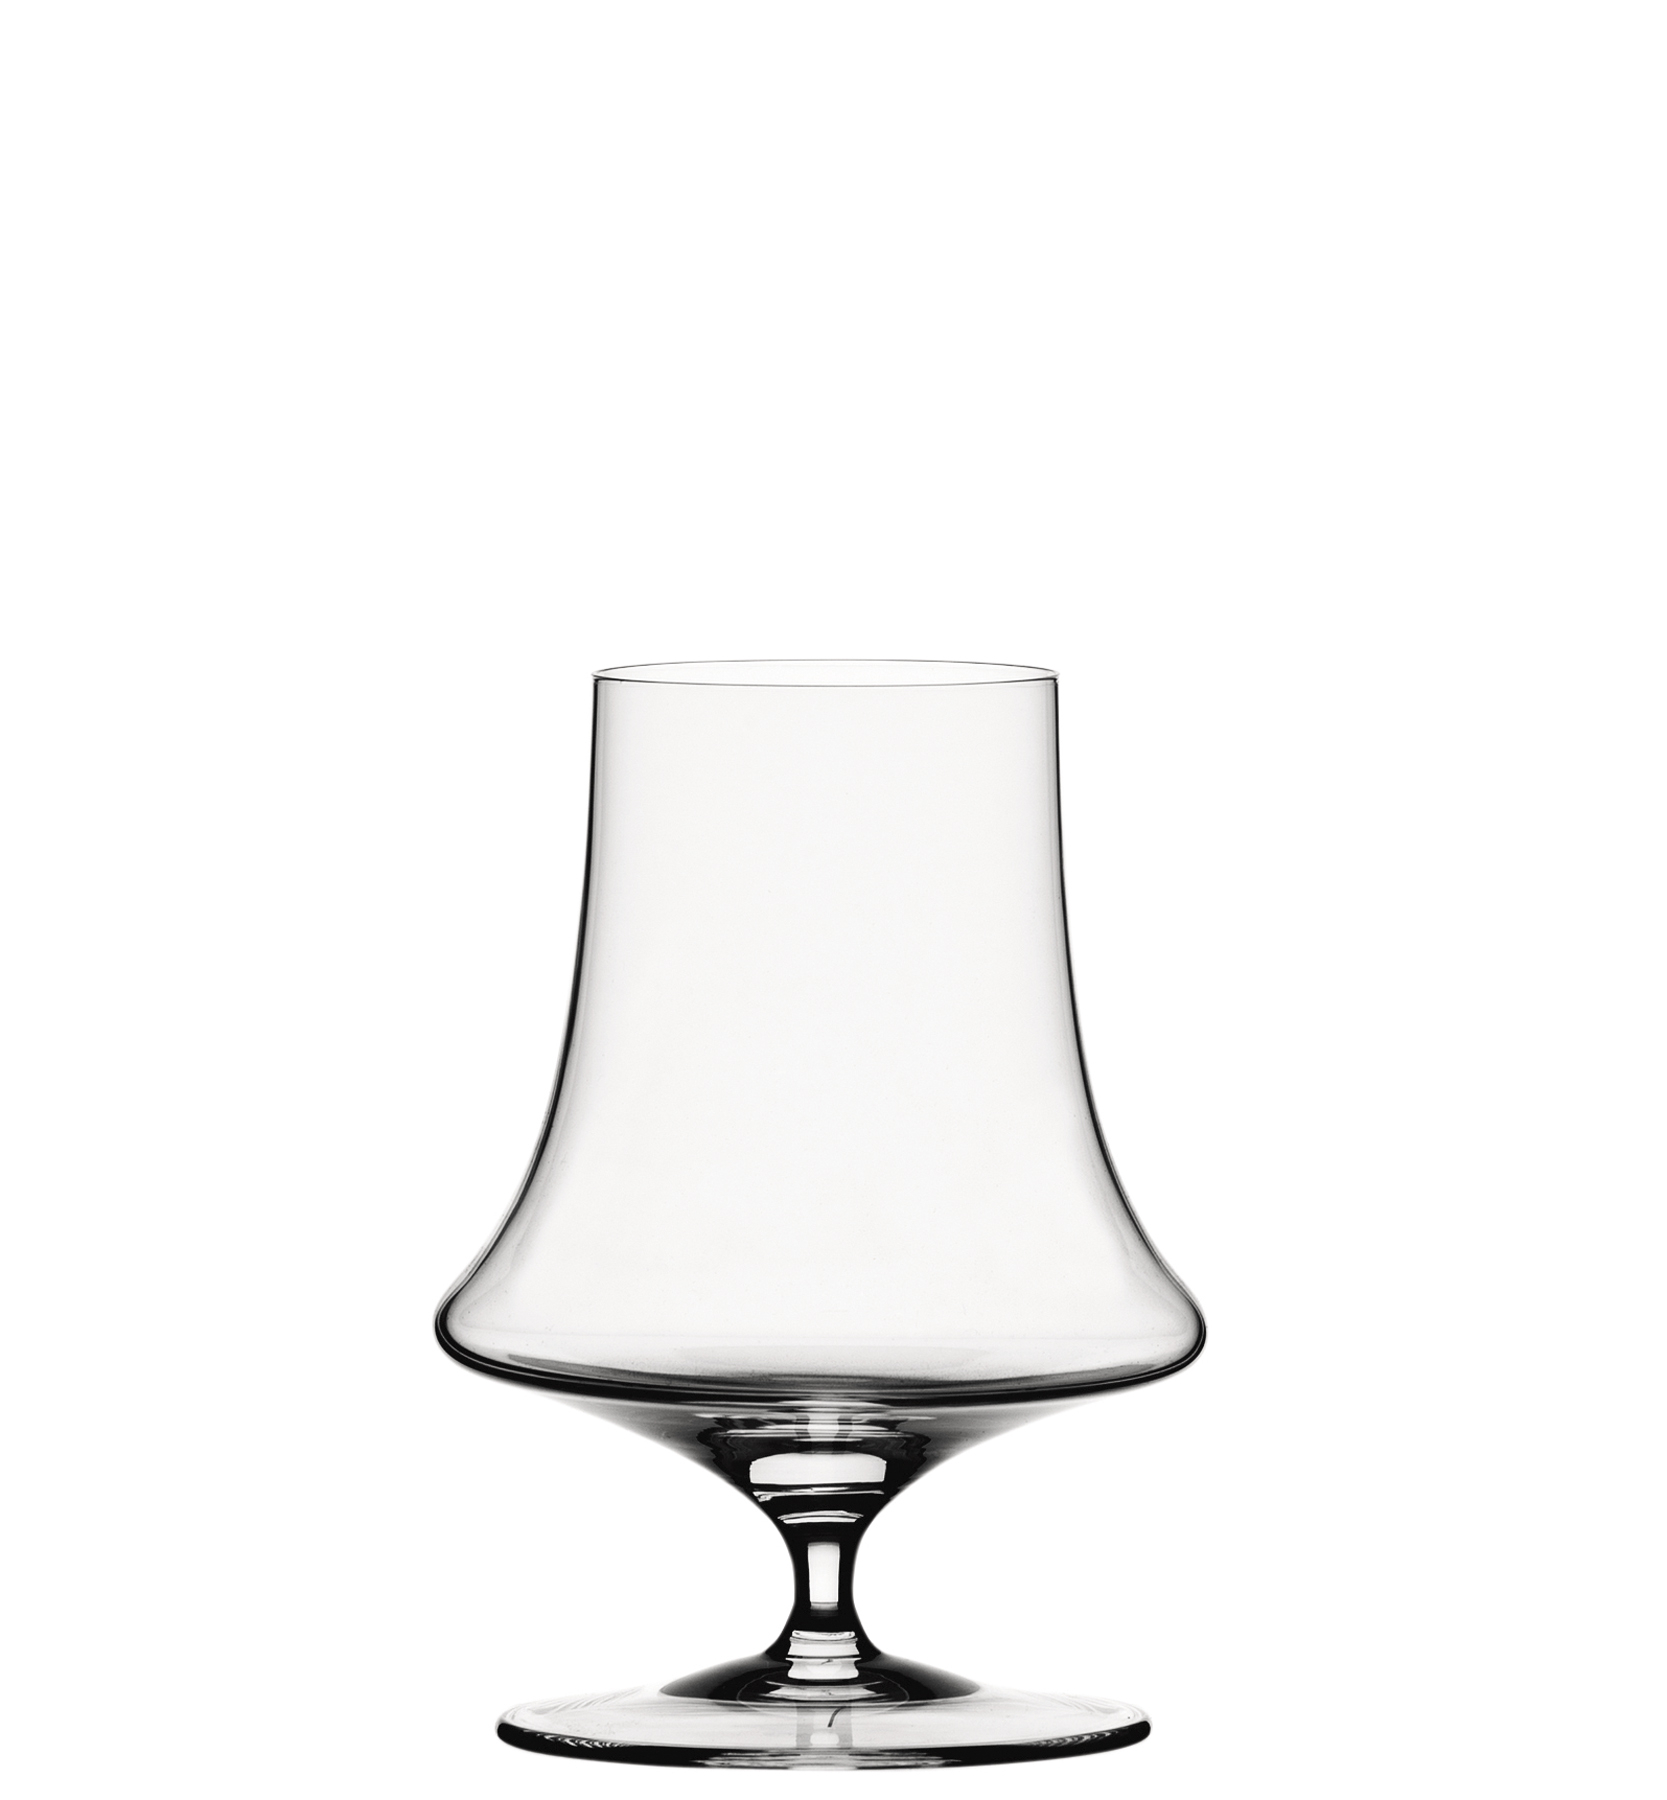 Whiskyglas Willsberger Anniversary, Spiegelau - 365ml (12 Stk.)